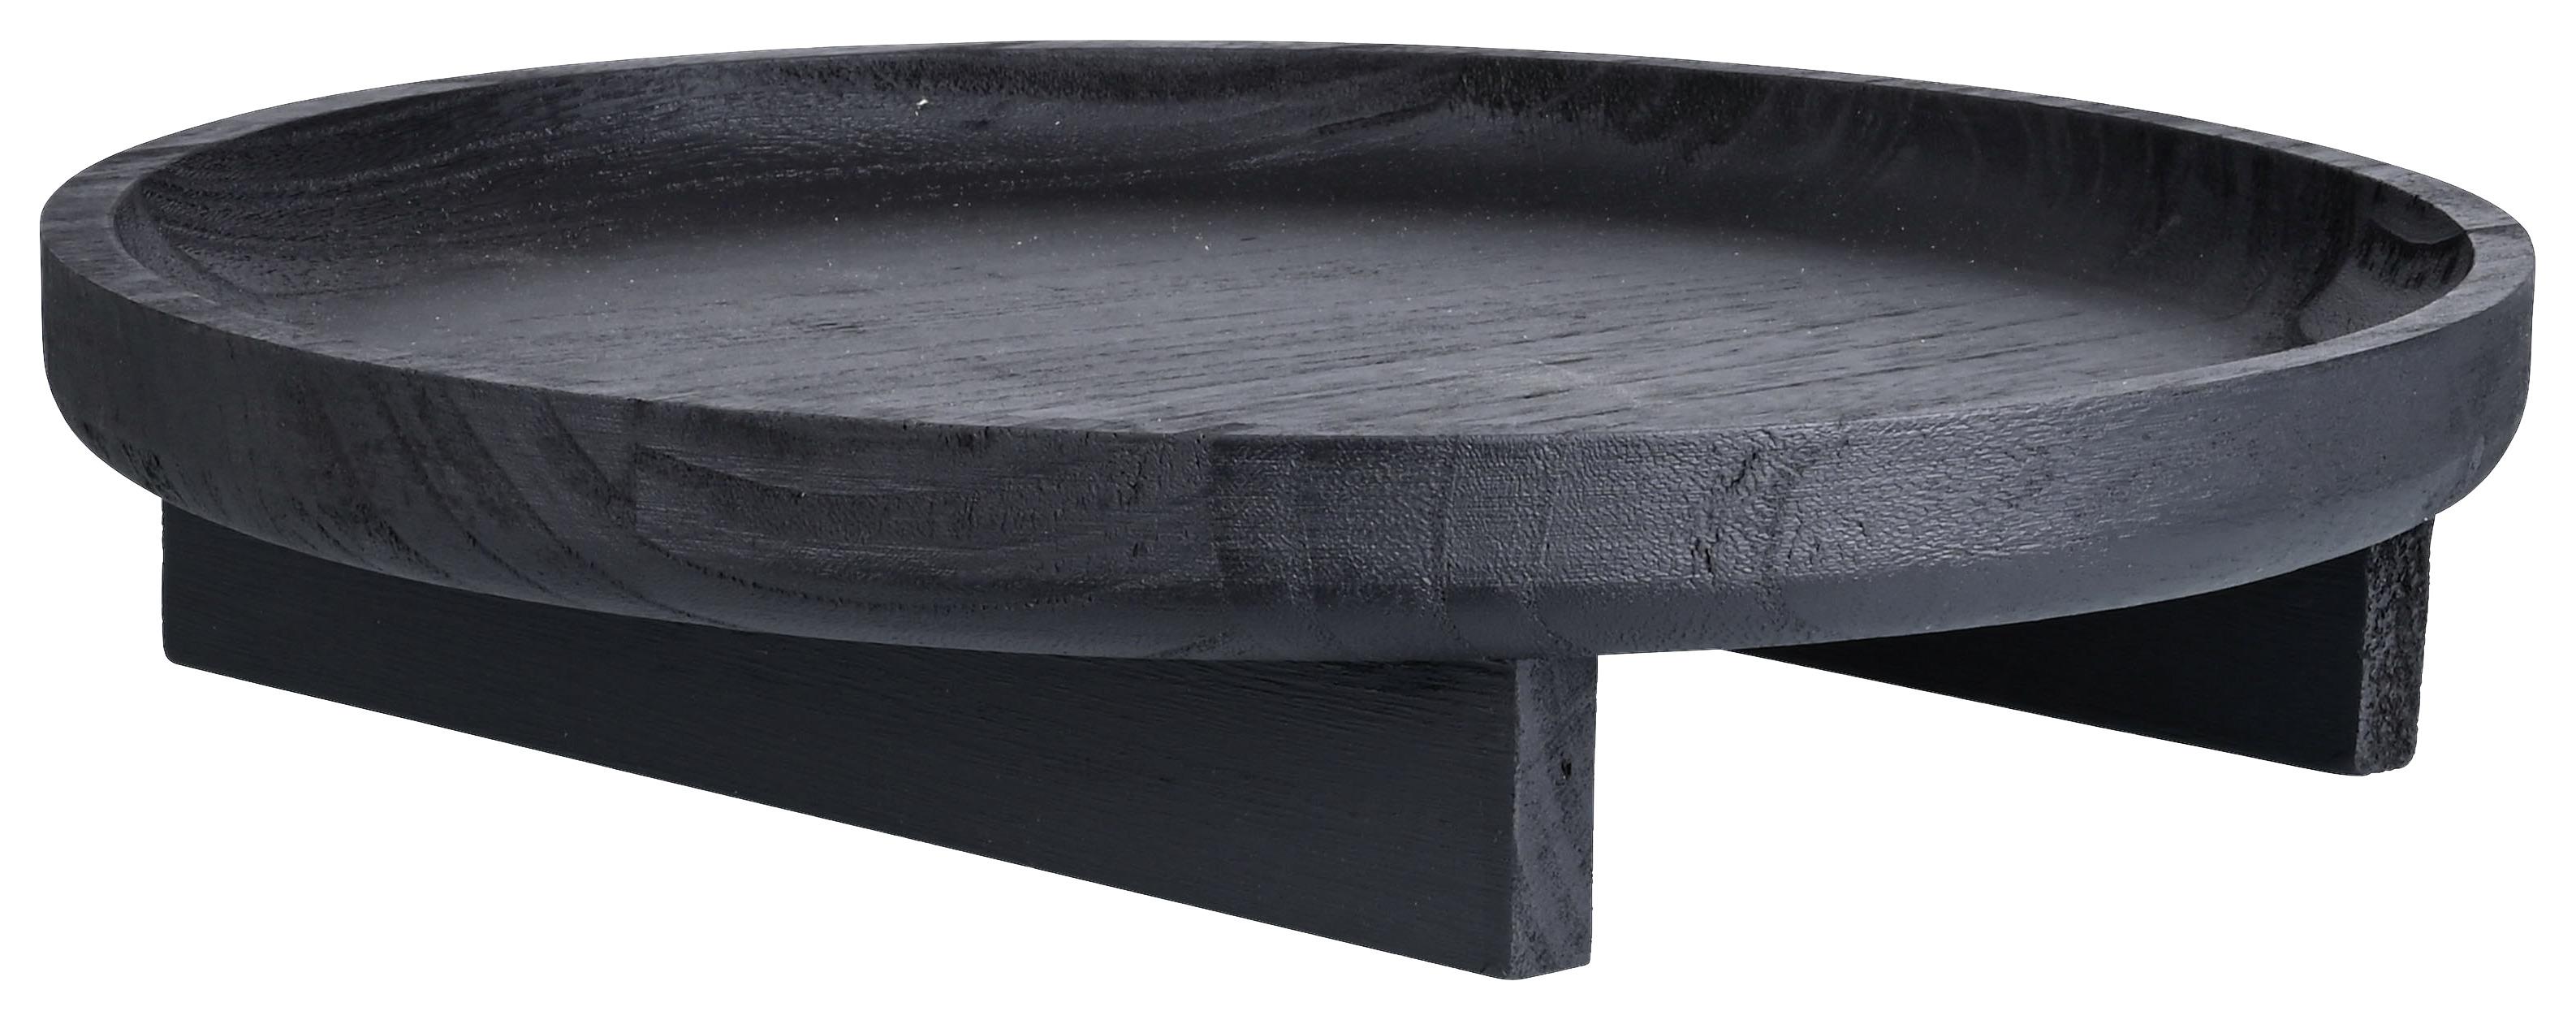 Dekorační Talíř Invidia, Ø: 35cm - černá, Natur, dřevo (35/7cm) - Zandiara